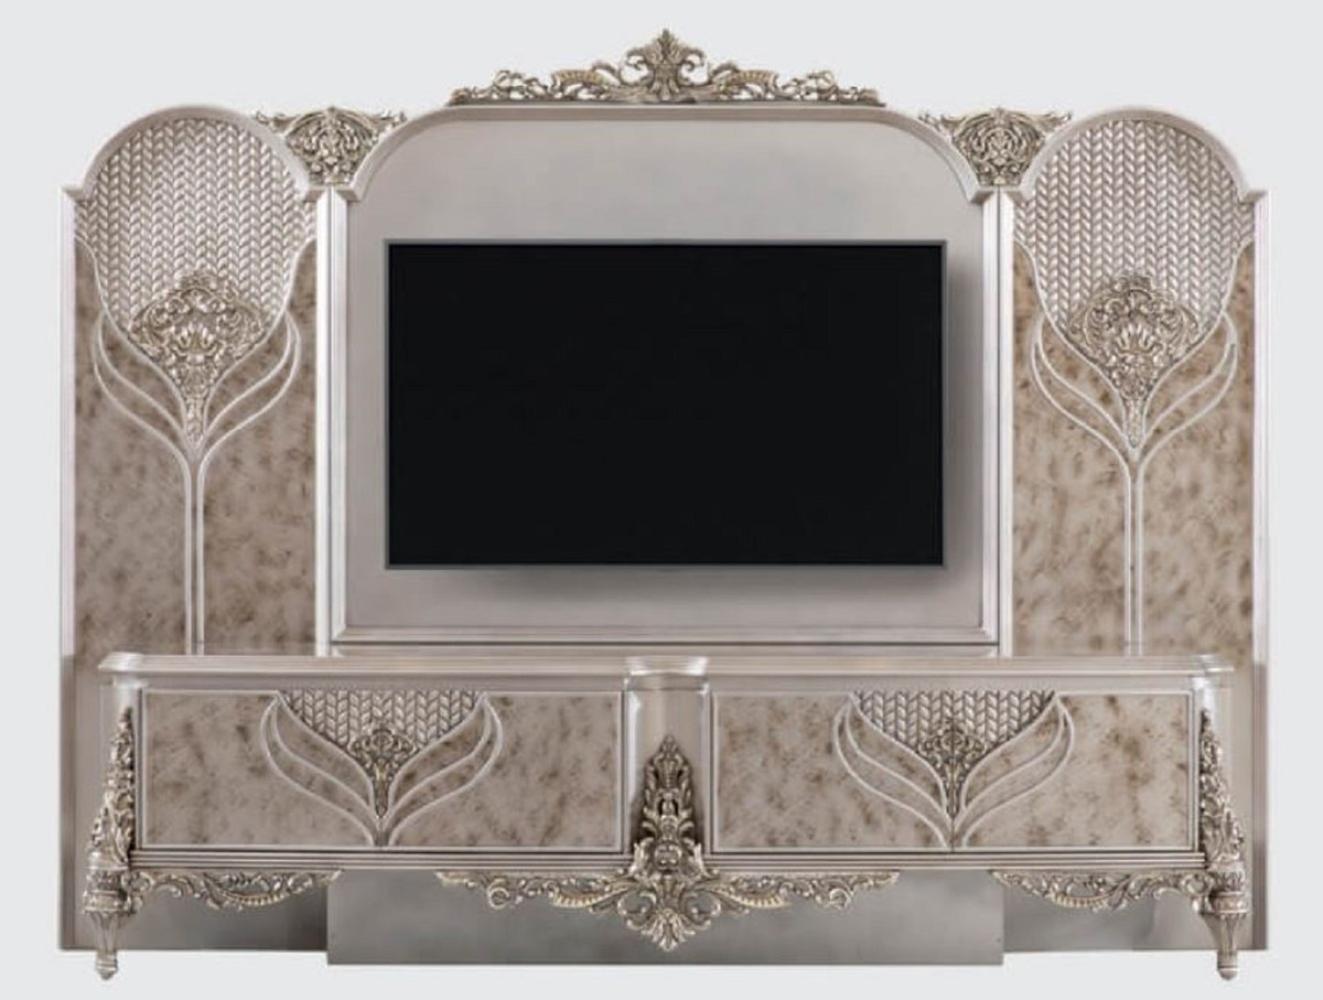 Casa Padrino Luxus Barock TV Schrank Silber - Prunkvolles Wohnzimmer Sideboard mit Rückwand - Barock Wohnzimmer Möbel Bild 1